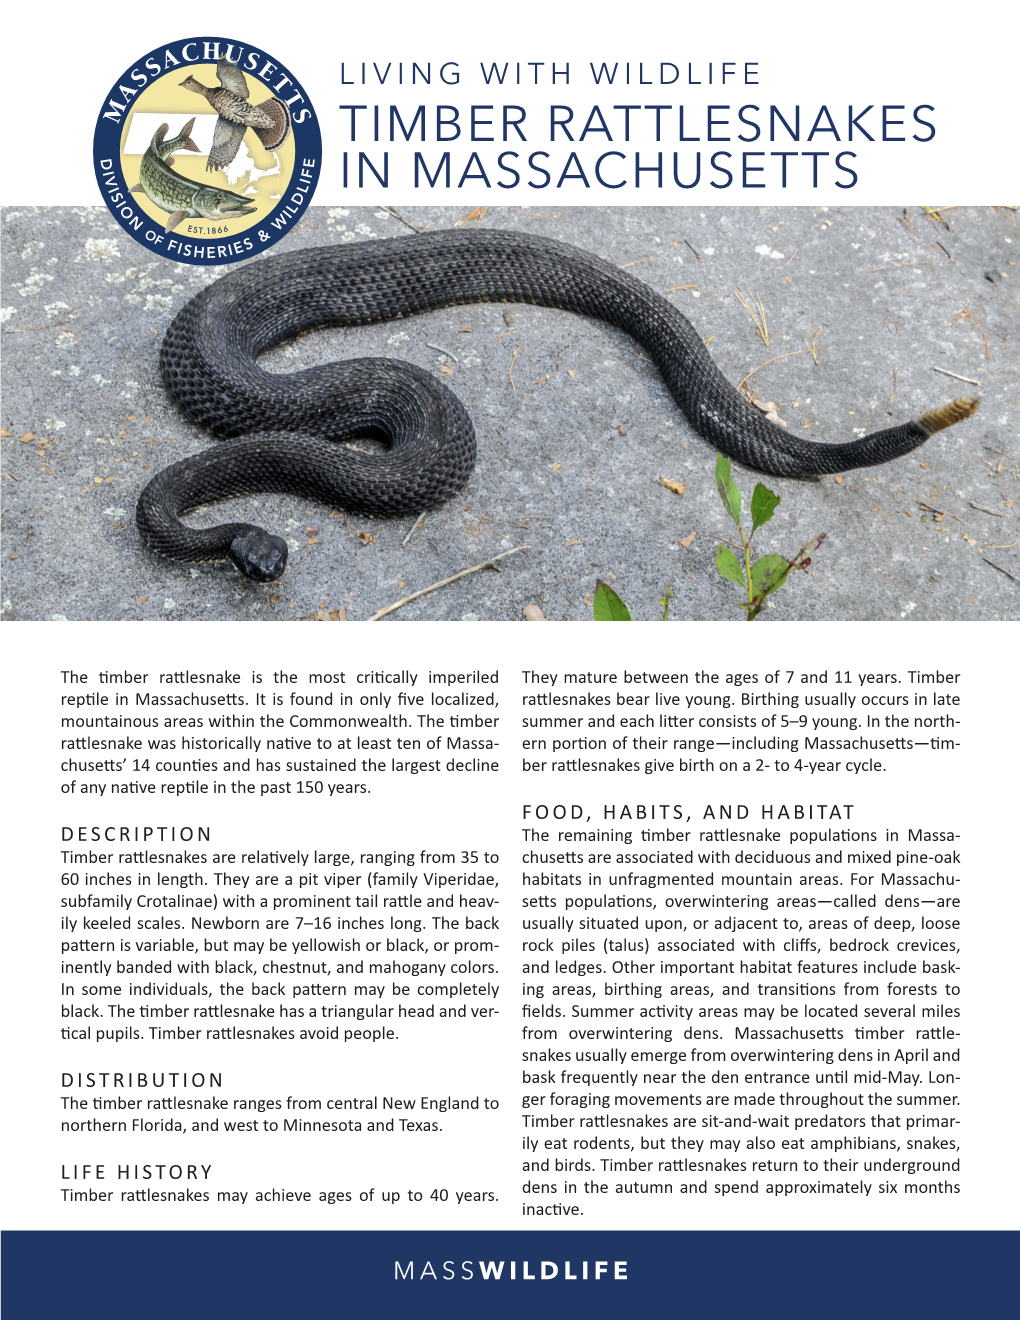 Timber Rattlesnakes in Massachusetts